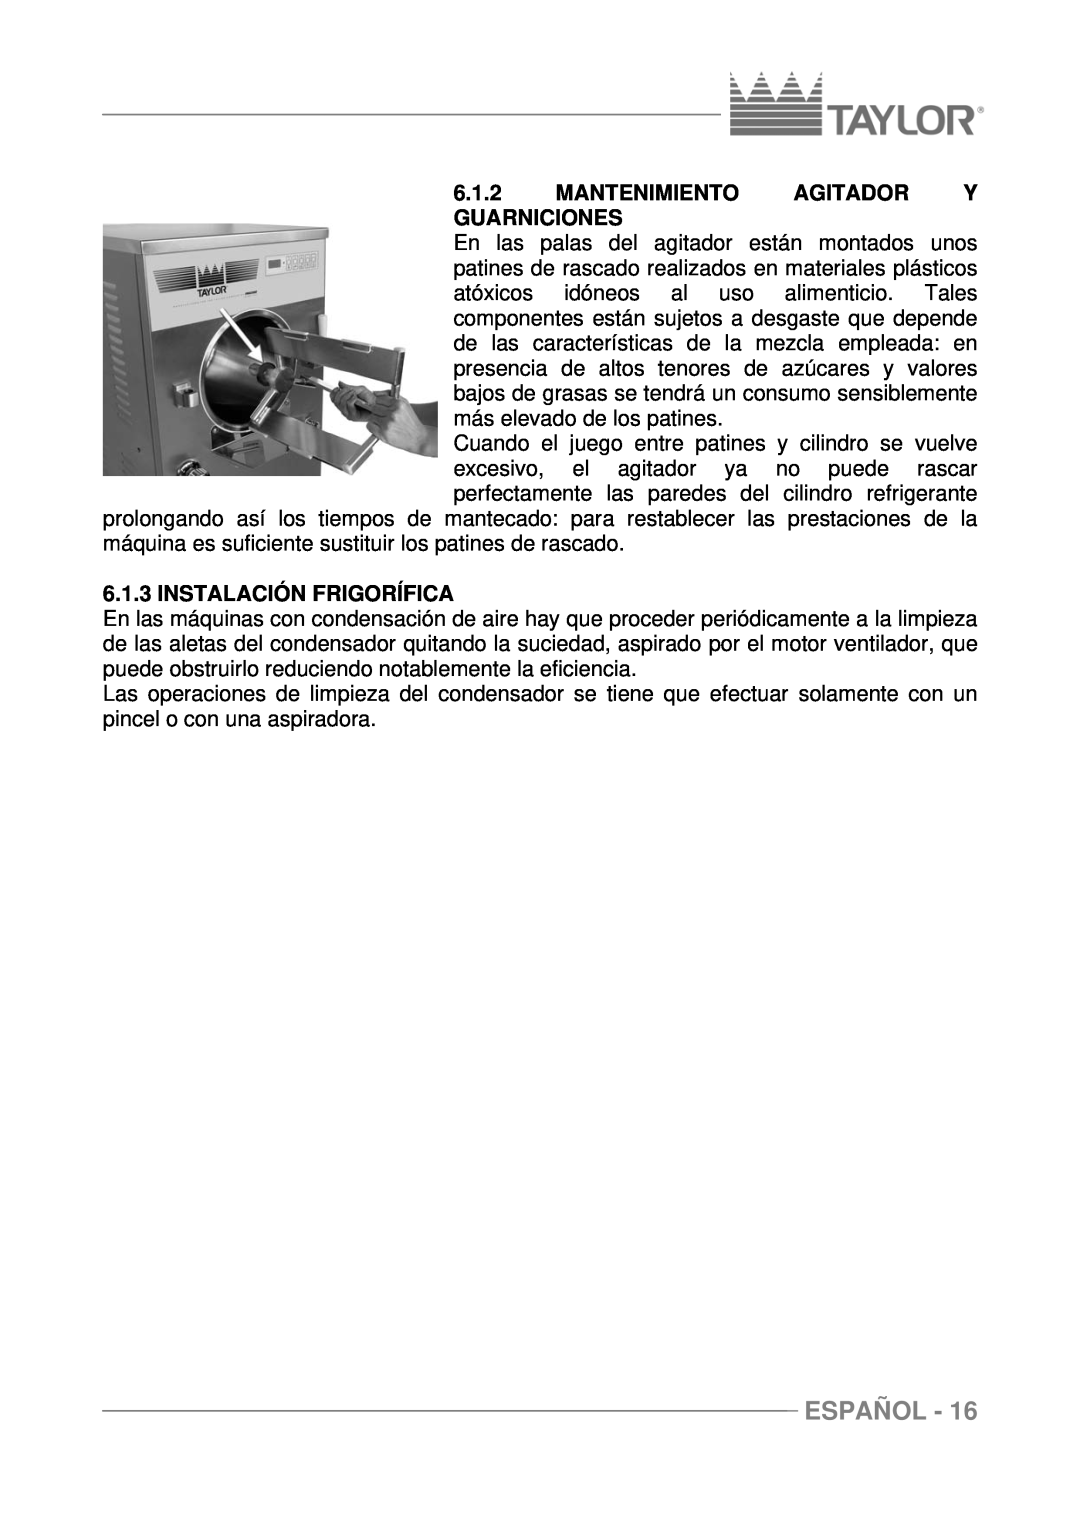 Taylor C116, C117, C118 manuel dutilisation Mantenimiento Agitador Y Guarniciones, Instalación Frigorífica, Español 